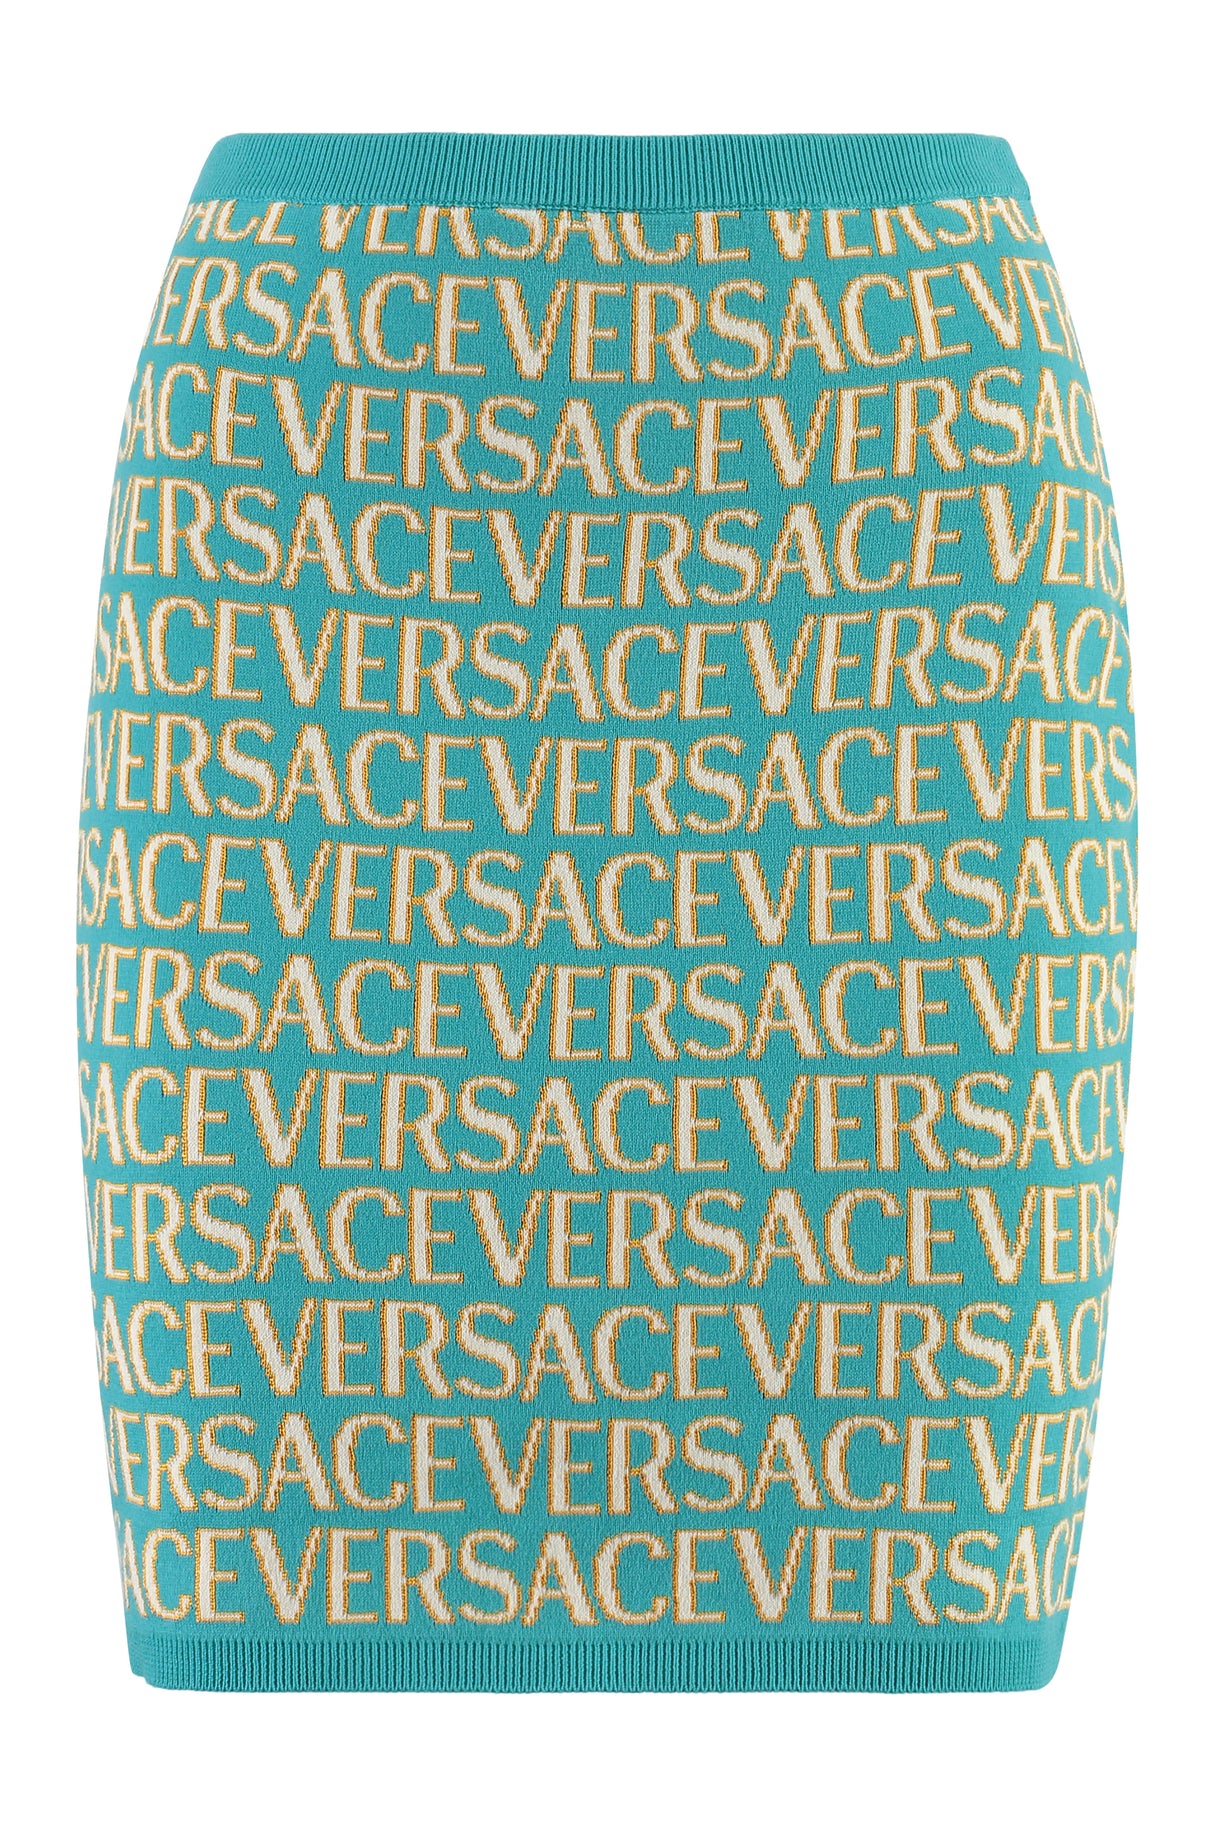 Chân váy ngắn knitturquoise Jacquard đính logo cho nữ (FW23)